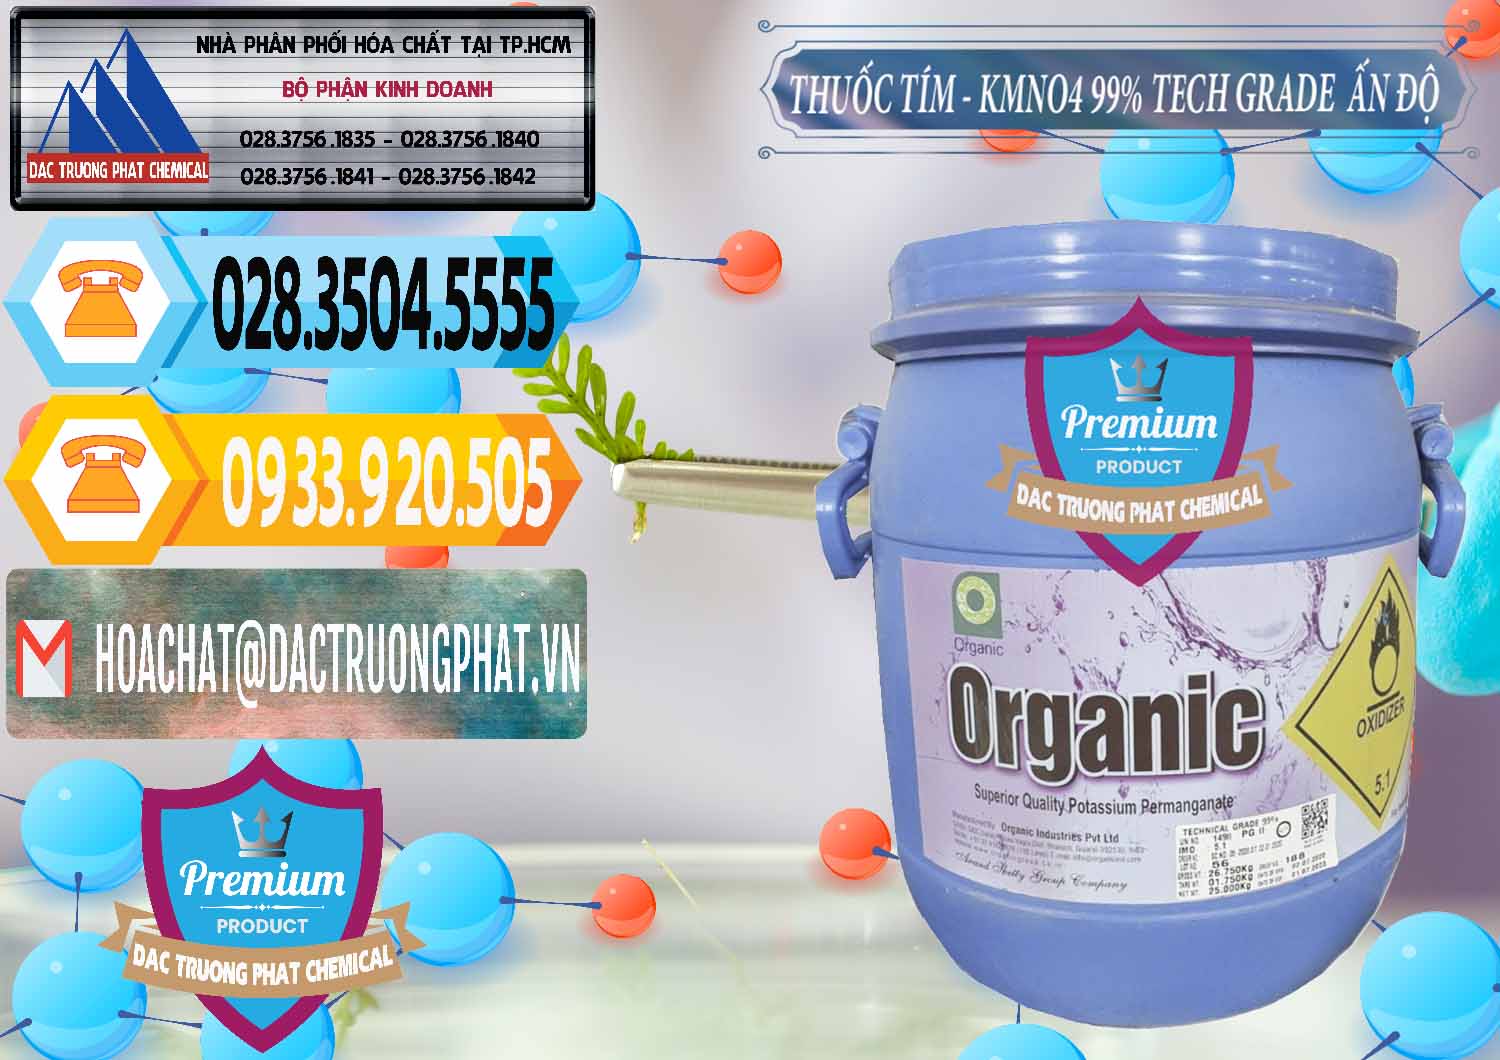 Công ty bán và cung ứng Thuốc Tím - KMNO4 99% Organic Group Ấn Độ India - 0250 - Chuyên phân phối và cung cấp hóa chất tại TP.HCM - hoachattayrua.net